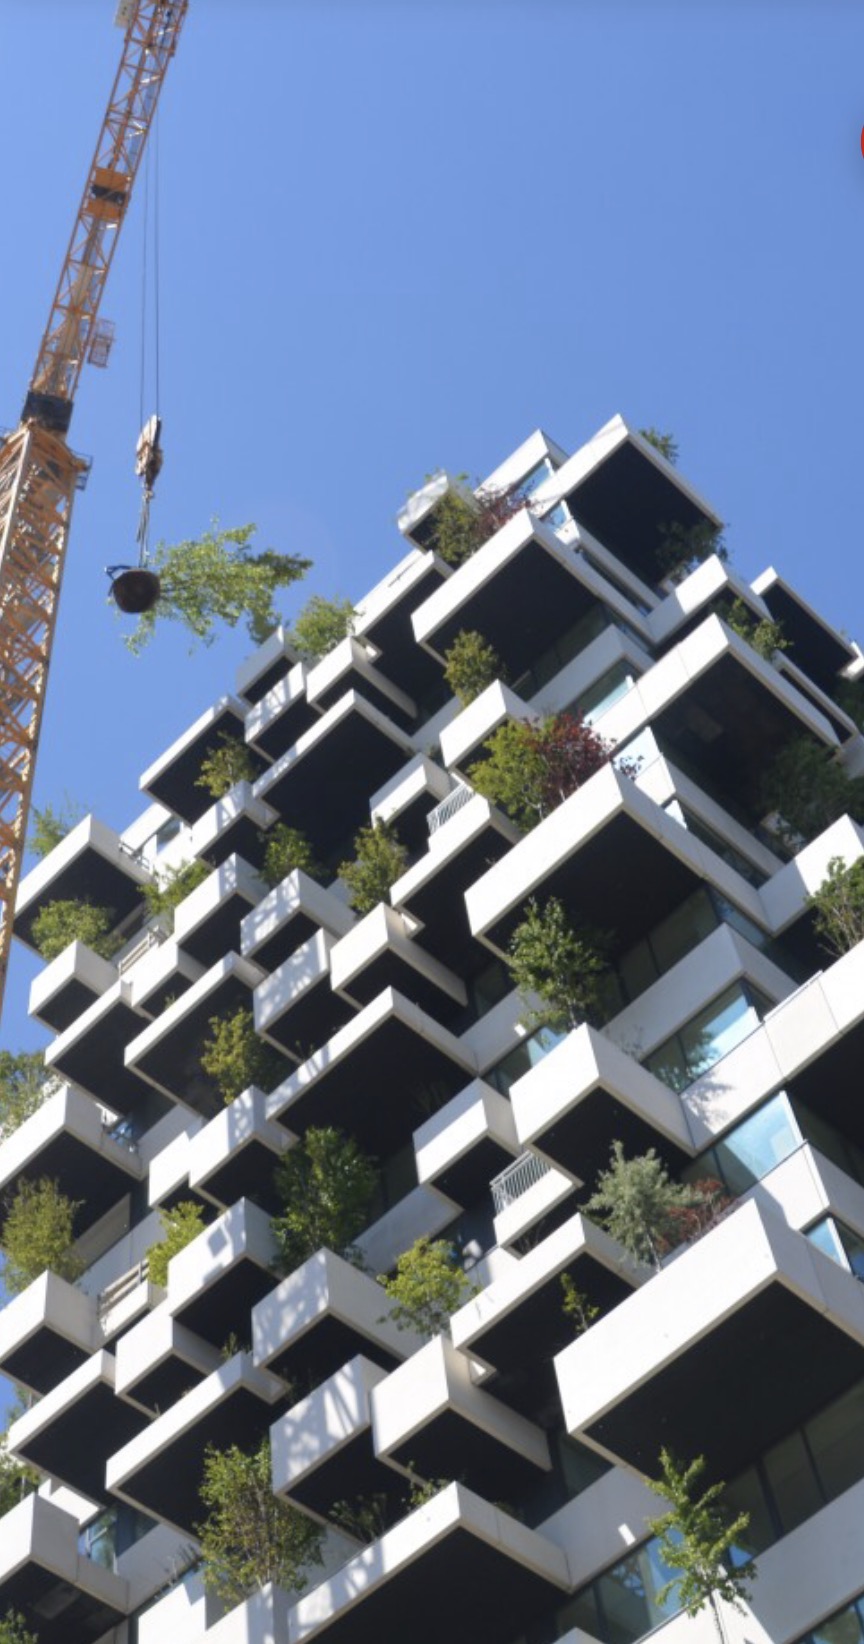 De expertise van architect Stefano Boeri, inmiddels internationaal bekend van de groene woontorens in Milaan, werd door woningcorporatie Sint-Trudo ingeschakeld om op Strijp-S het groene appartementencomplex te realiseren.